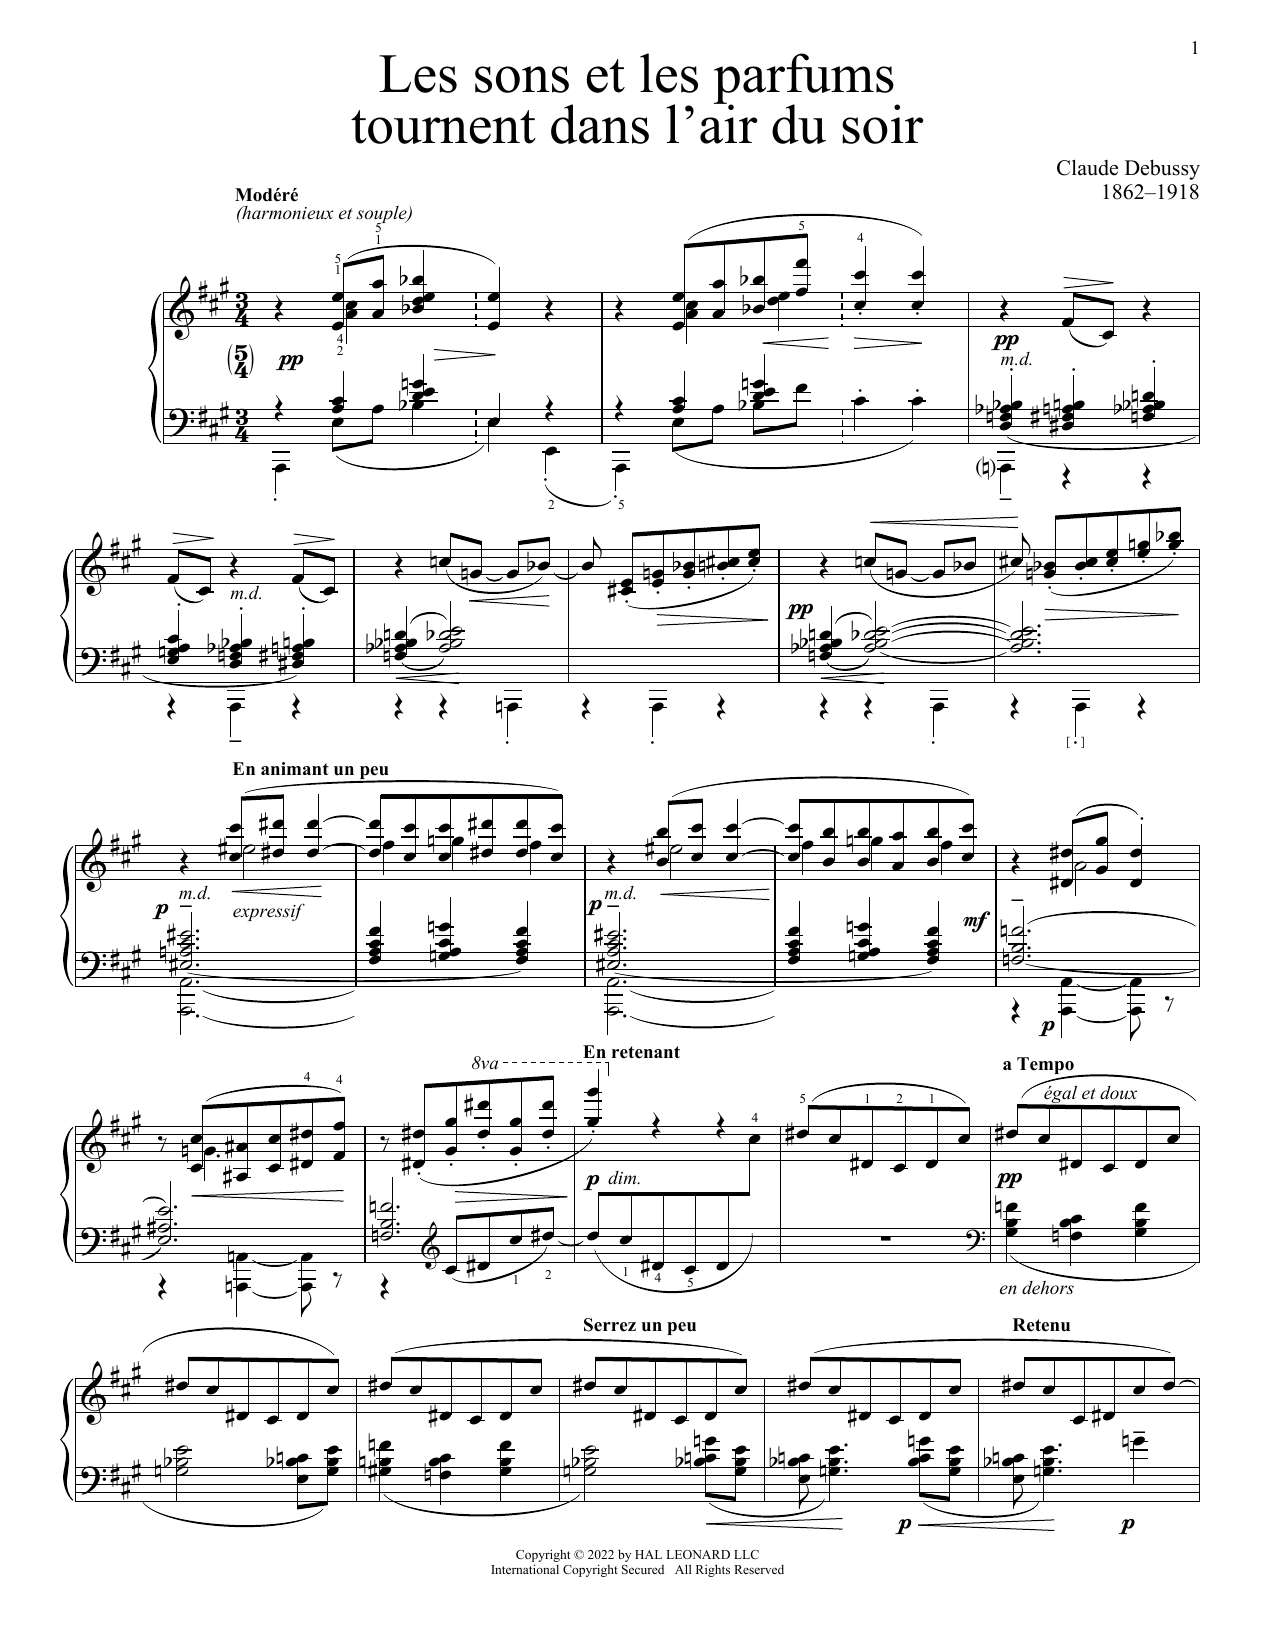 Claude Debussy Les Sons Et Les Parfums Tournent Dans L'Air Du Soir sheet music notes and chords arranged for Piano Solo